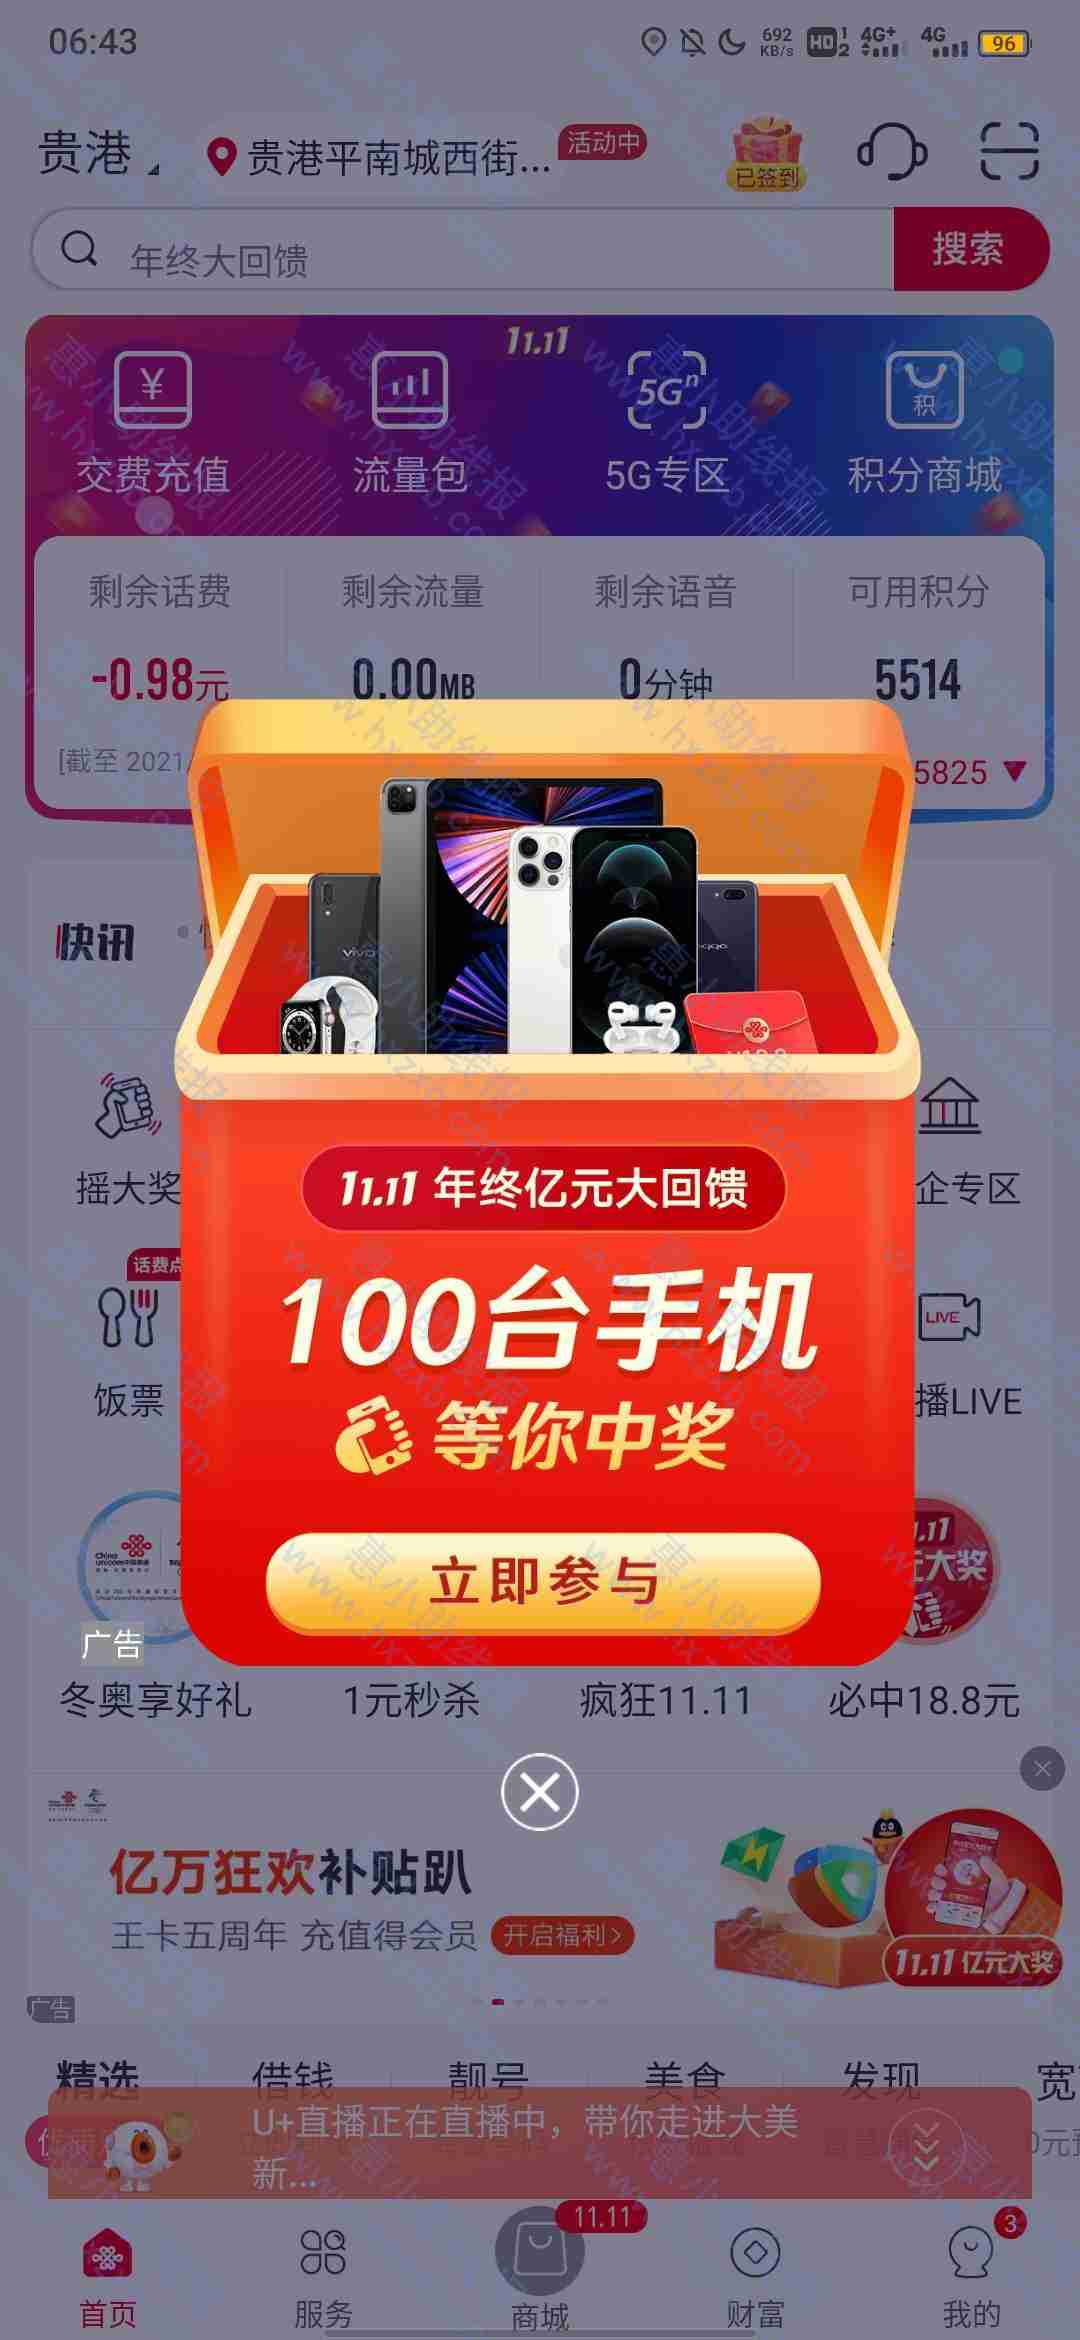 中国联通必得18.80红包